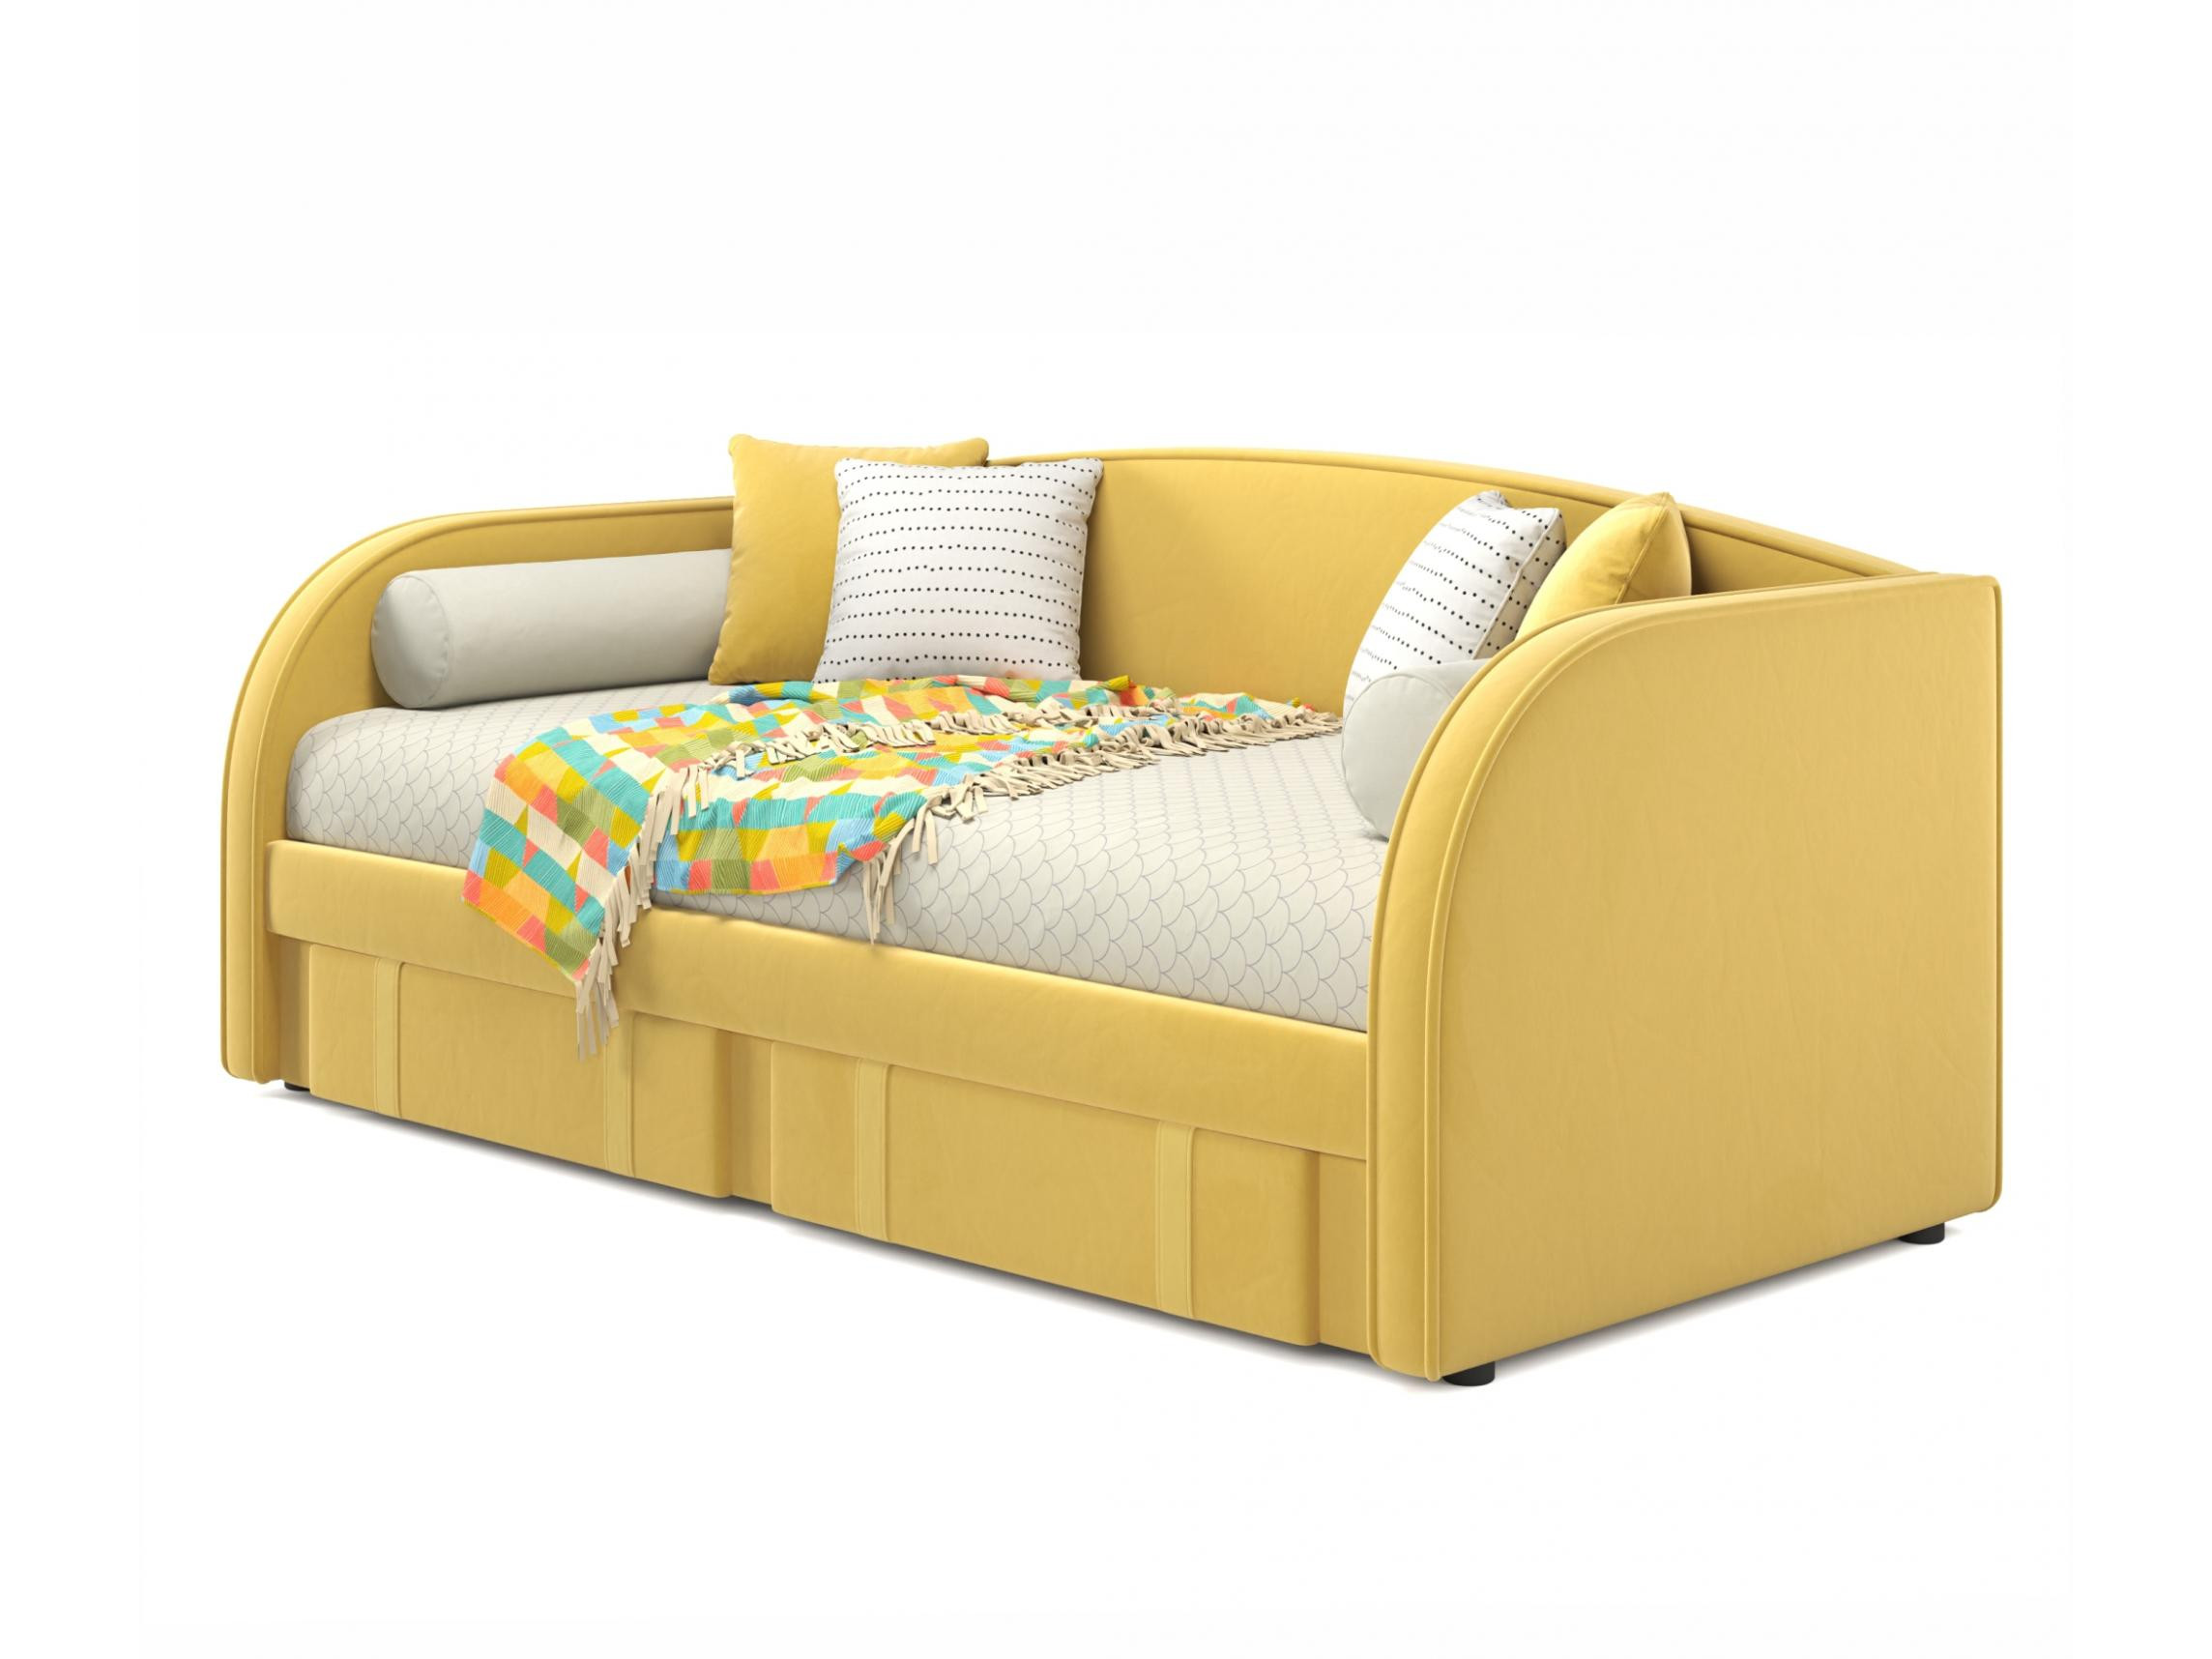 Мягкая кровать Elda 900 желтая с ортопедическим основанием и матрасом АСТРА желтый, Желтый, Велюр, ДСП